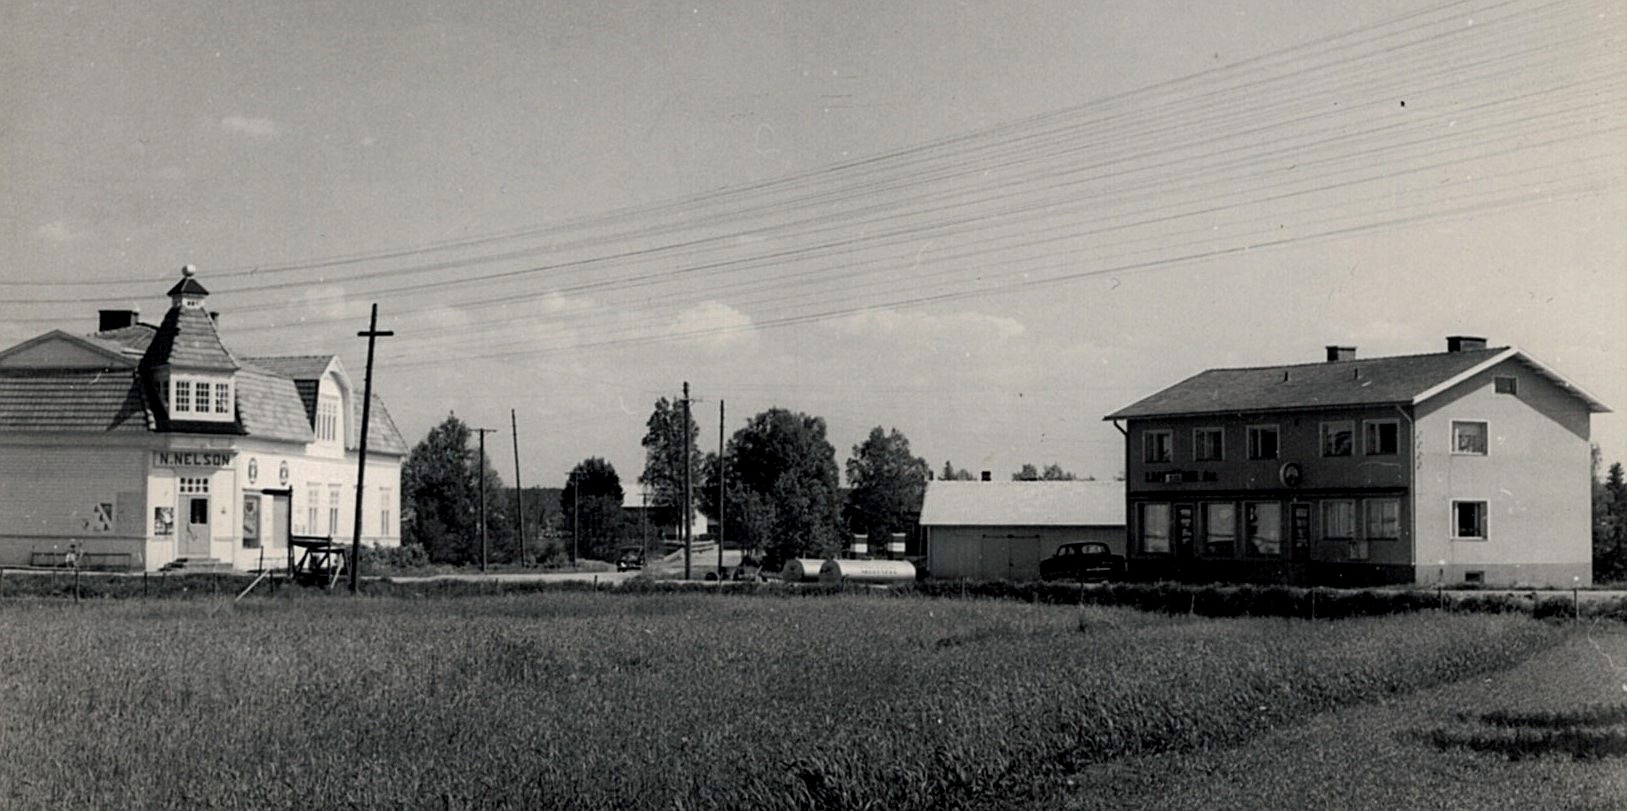 Nelsons affär till vänster och Sparbankshuset till höger. Fotot möjligtvis från slutet av 60-talet.